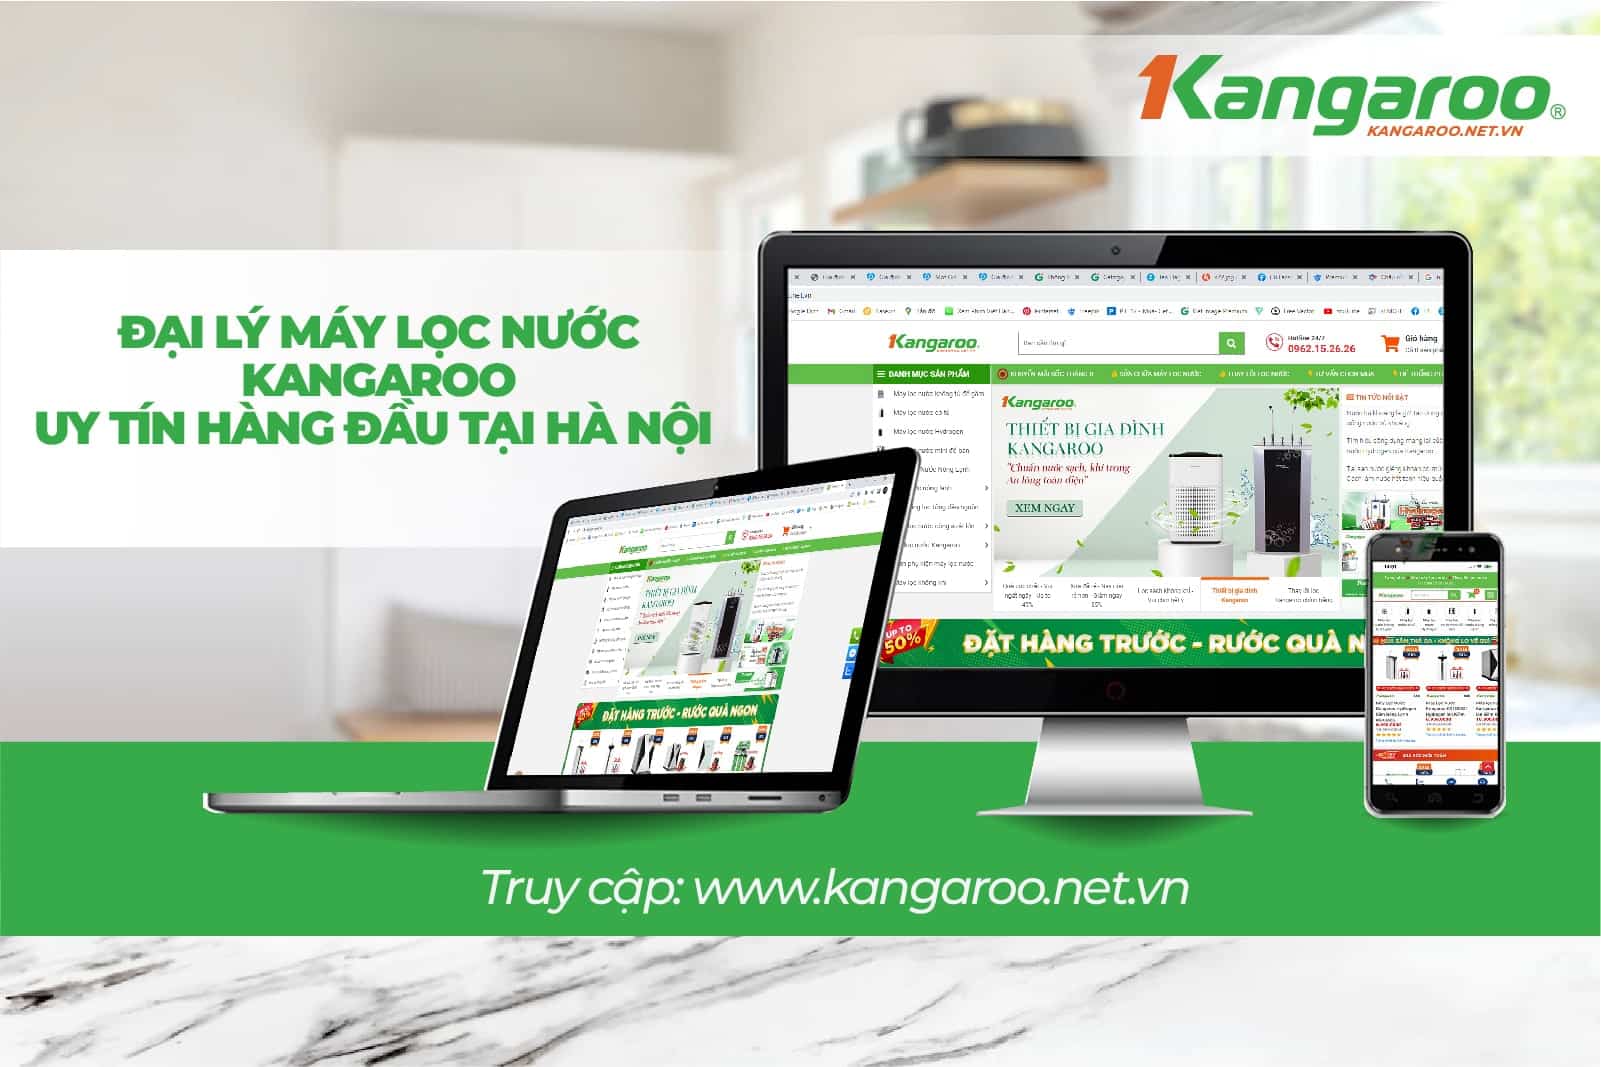  Kangaroo net vn là địa chỉ luôn khách hàng tin dùng